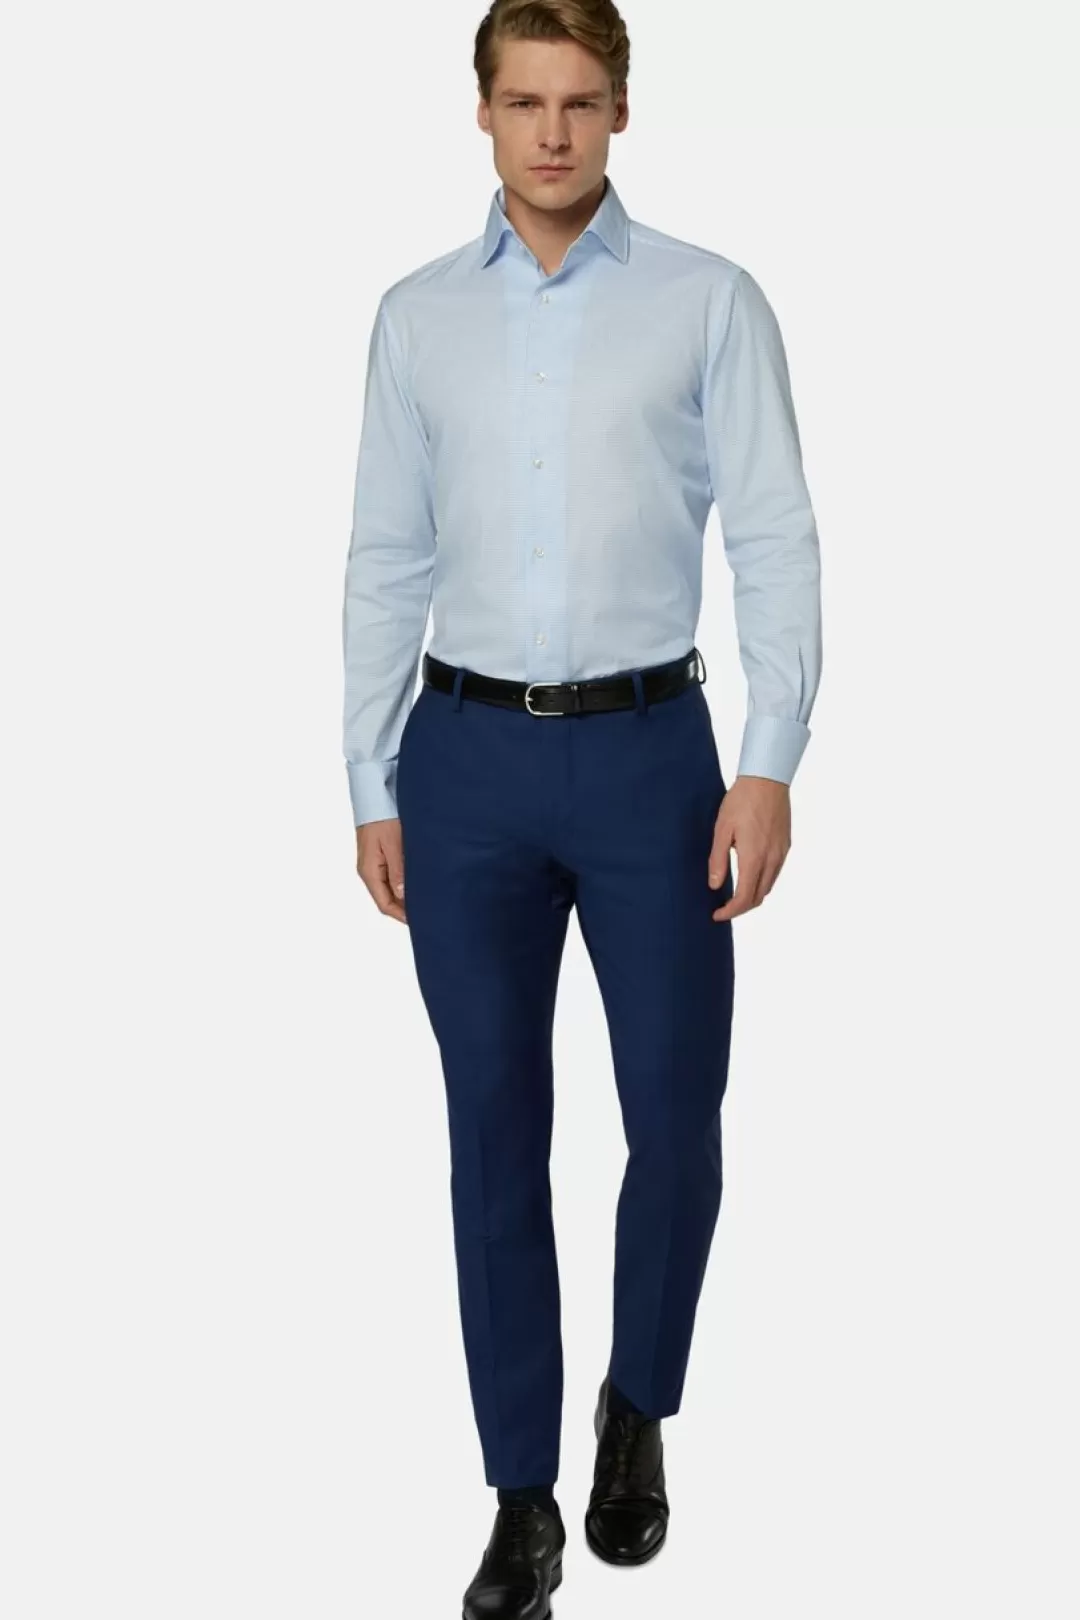 Boggi Camicia A Quadretti Azzurri In Cotone Regular Fit Azzurro Shop